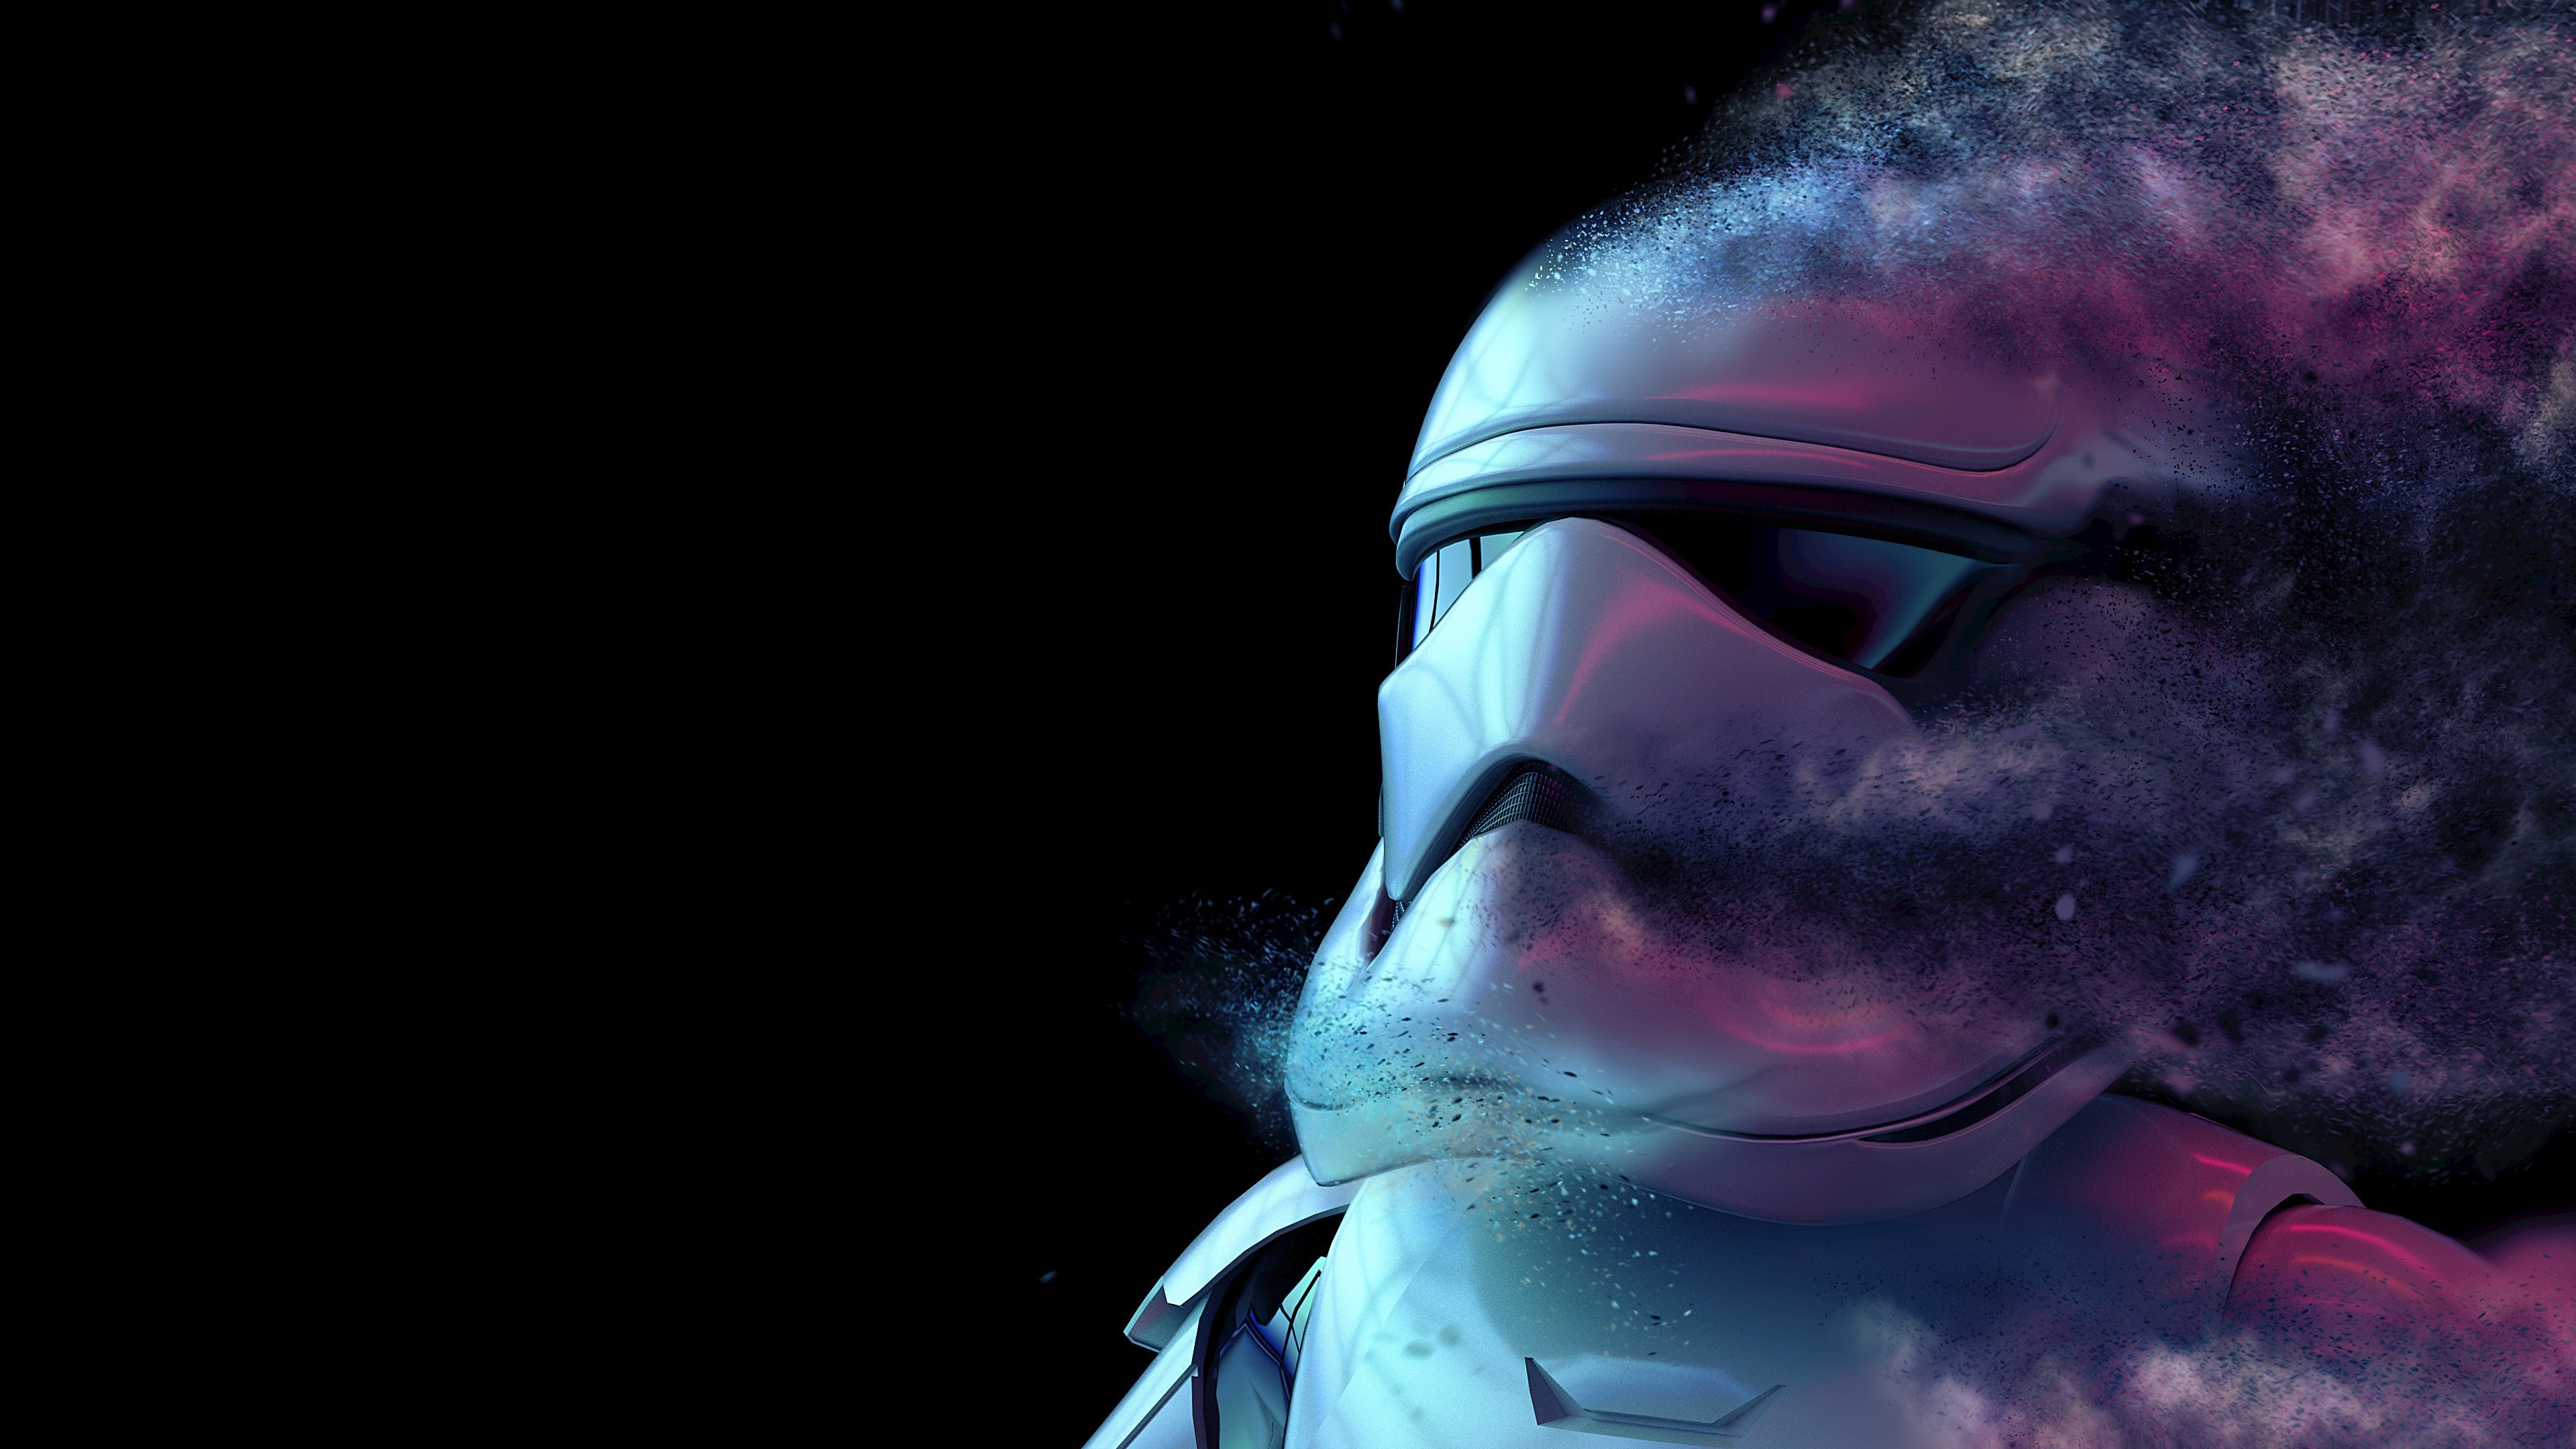 Storm Trooper from Star Wars wallpaper 3840x2160